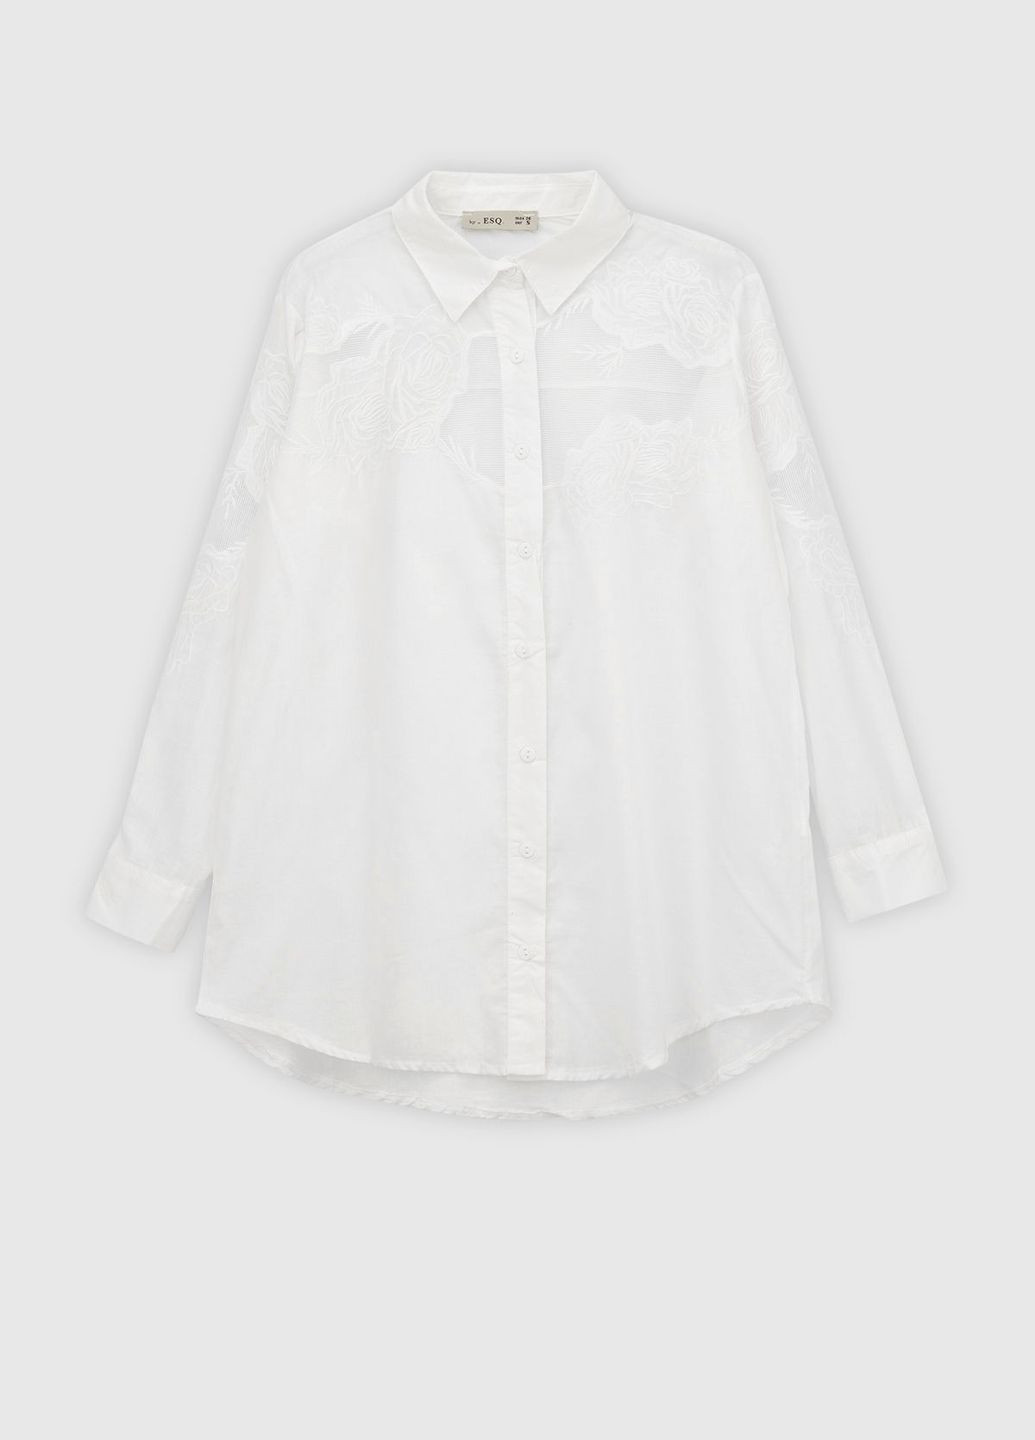 Белая повседневный рубашка однотонная ES-Q